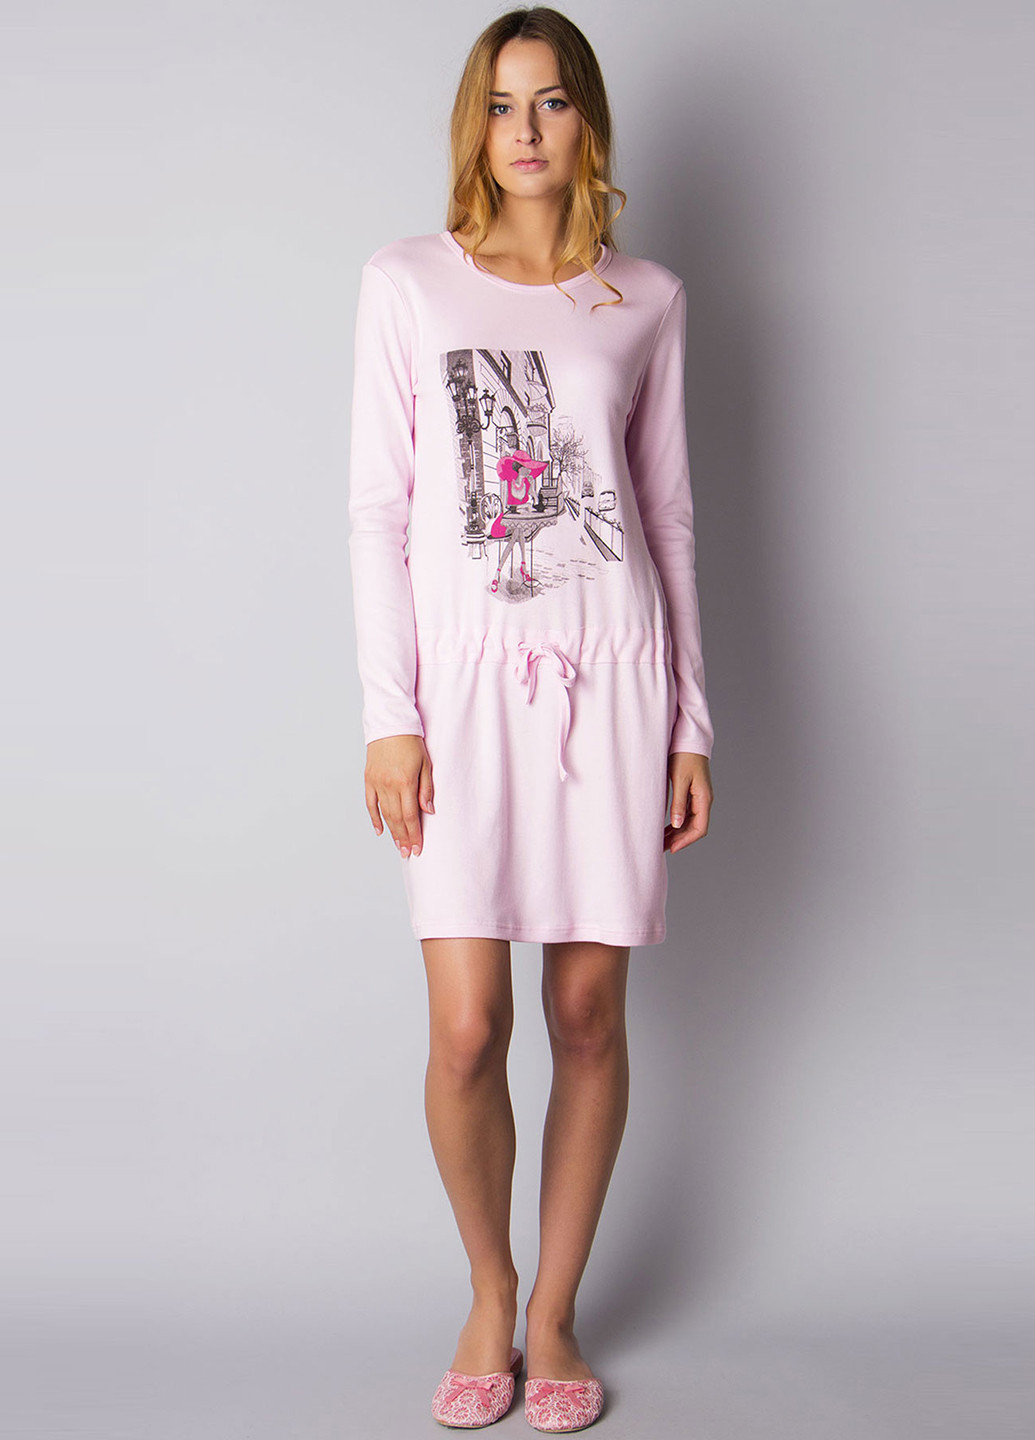 Светло-розовое домашнее платье Ogham с рисунком